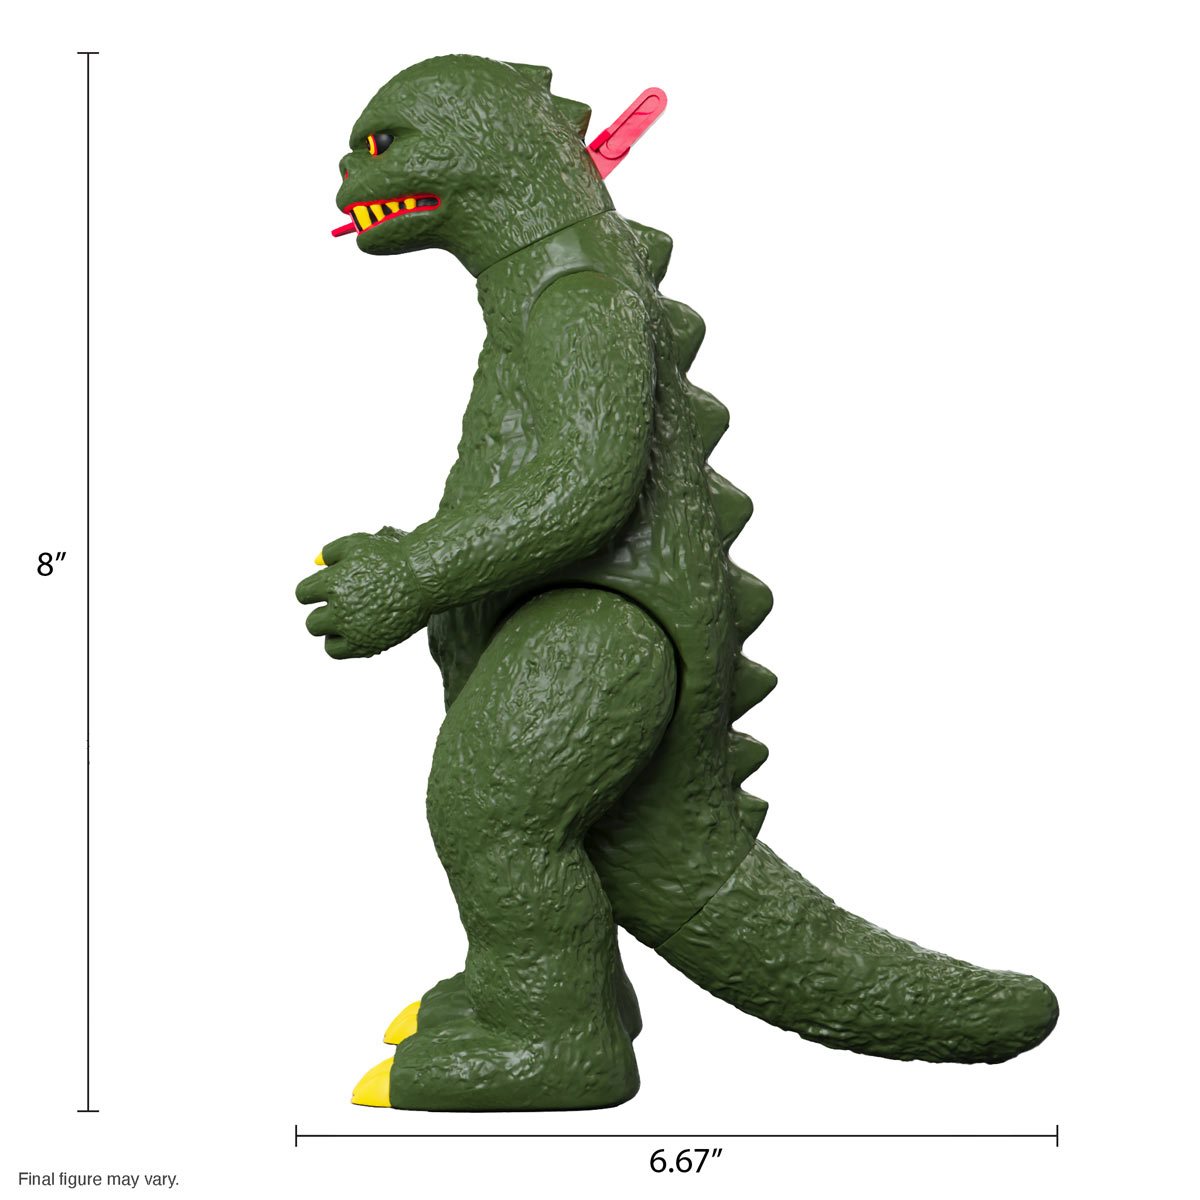 Ban Dai Godzilla 65th Anniversary Figure 6" New Toy Figure Free Shipping Cool AM 